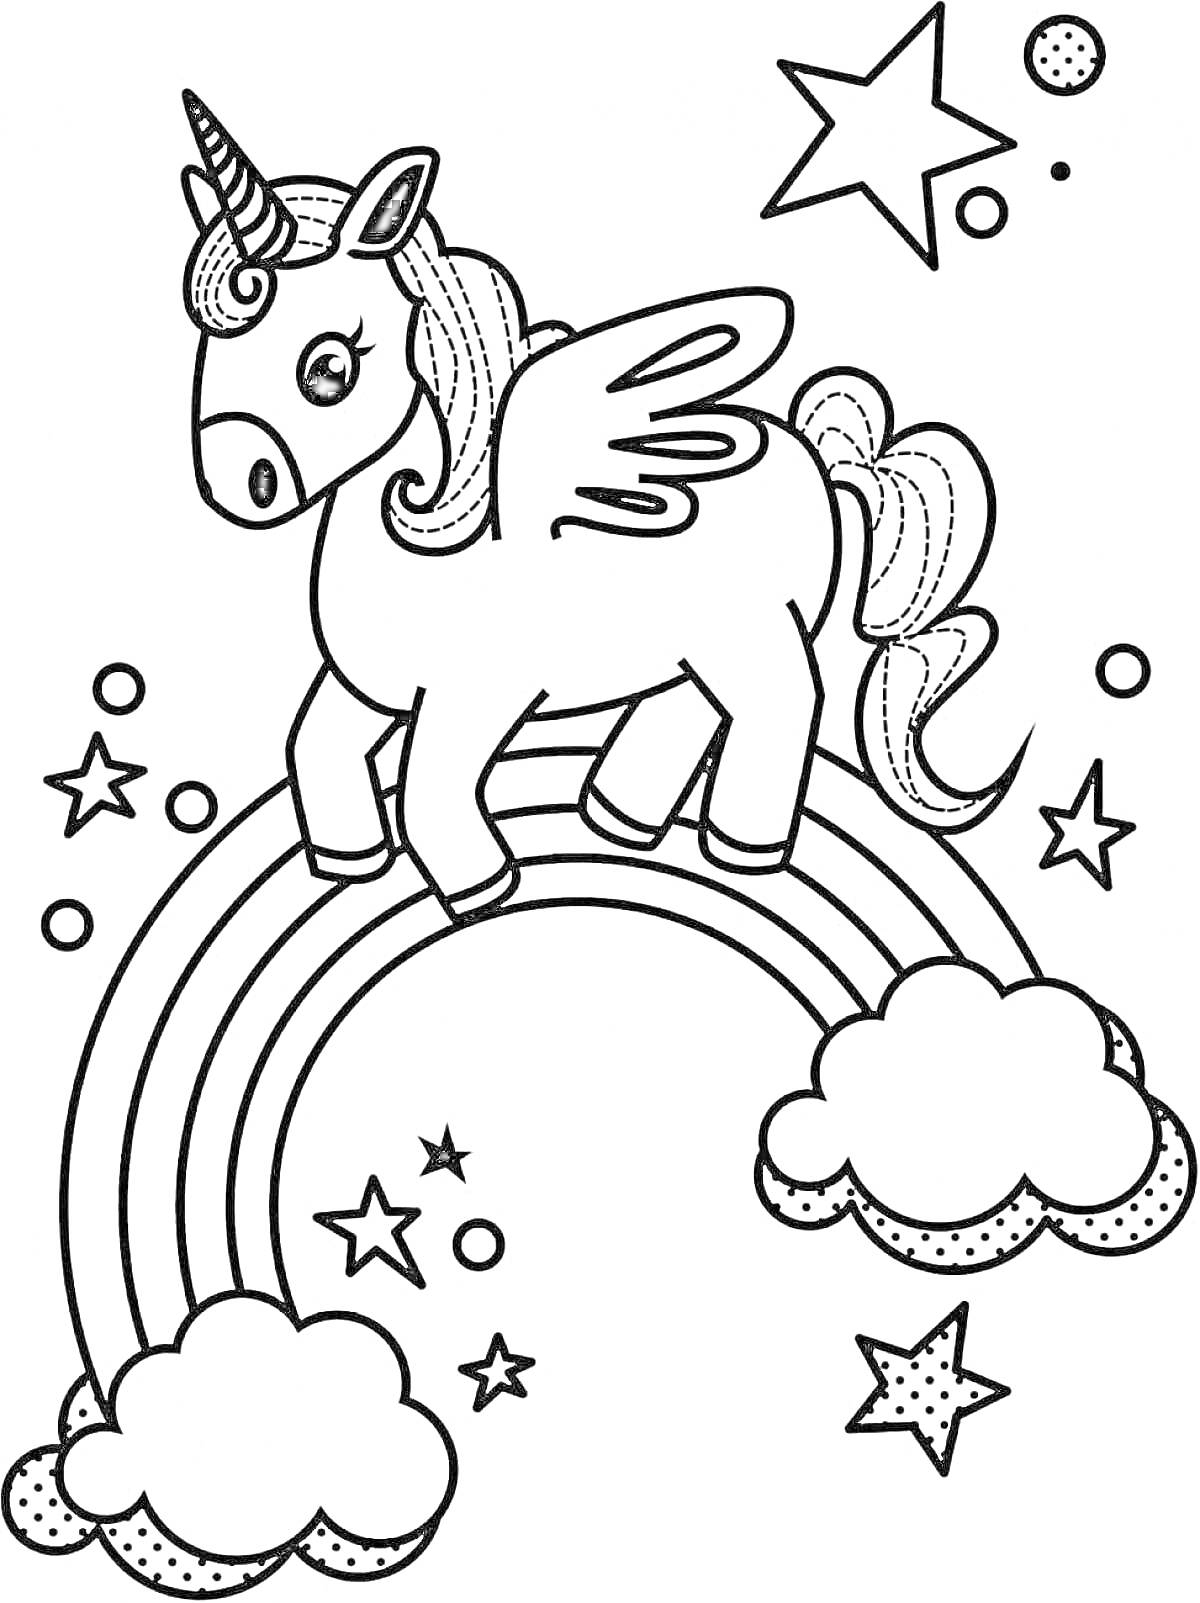 Раскраска Единорог на радуге с крыльями и звездами, окруженный облаками и малиновыми звездами